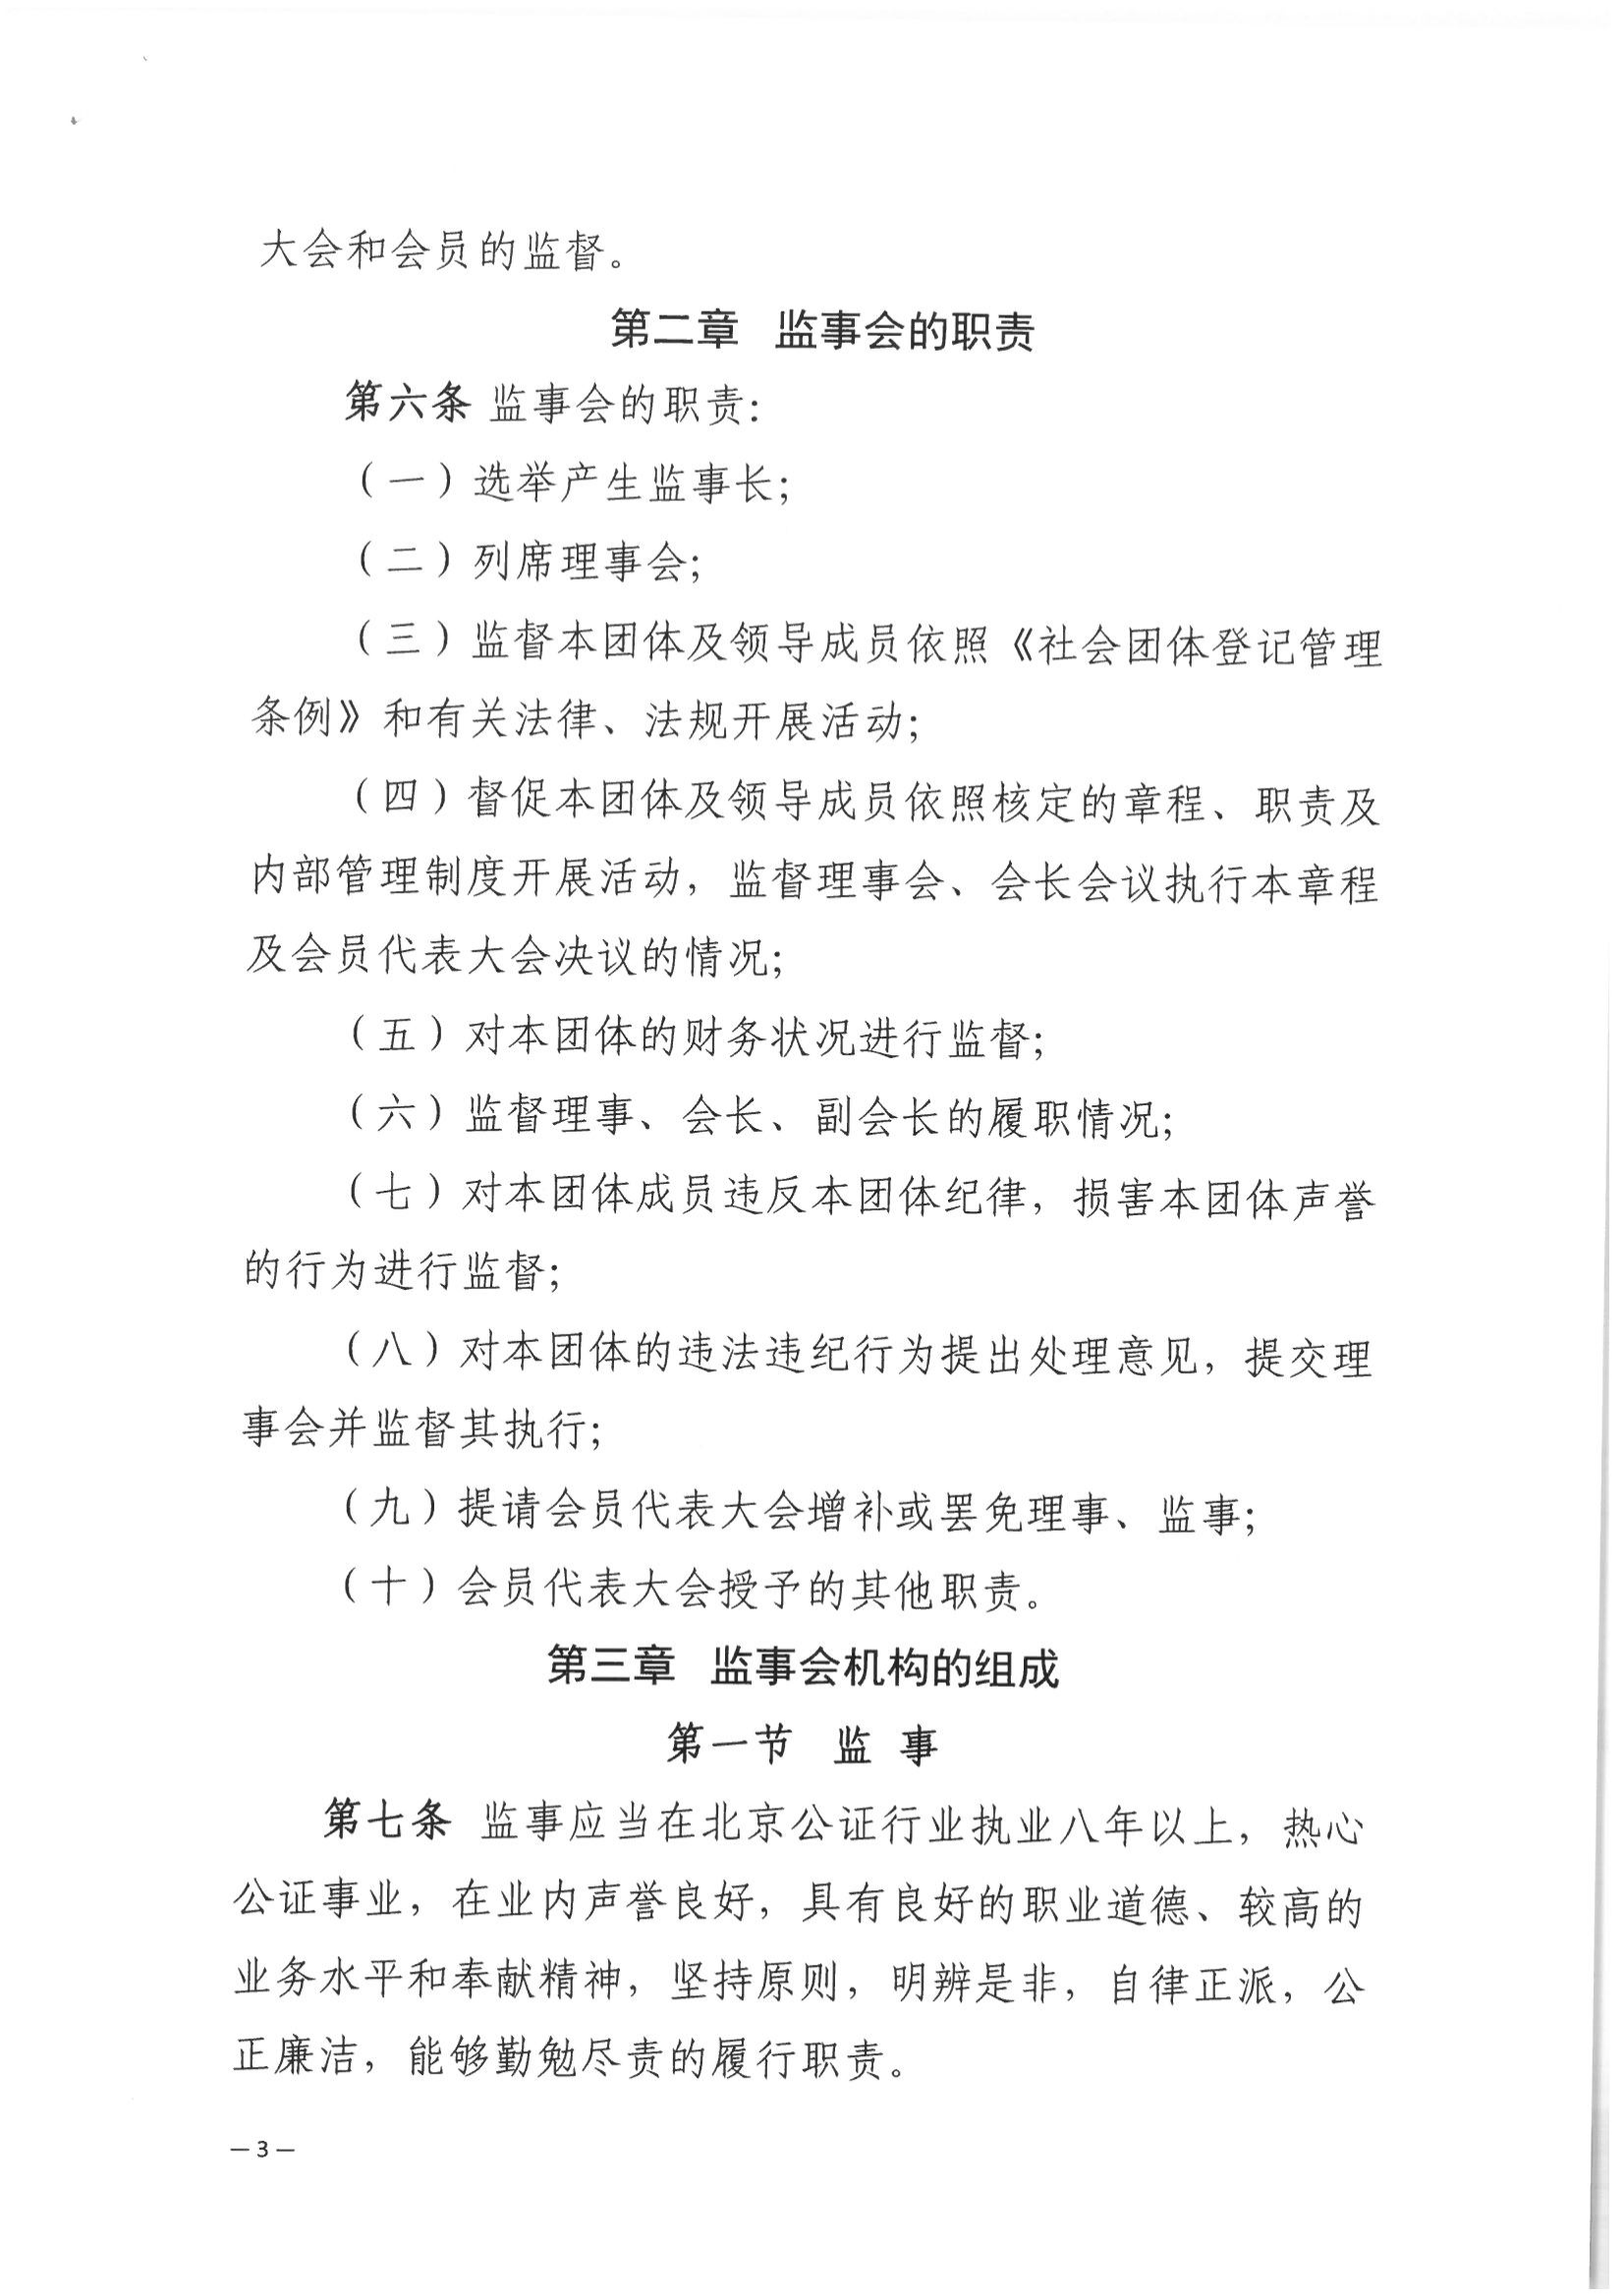 京公协字【2021】32号 北京市公证协会关于印发北京市公证协会监事会工作规则的通知_04